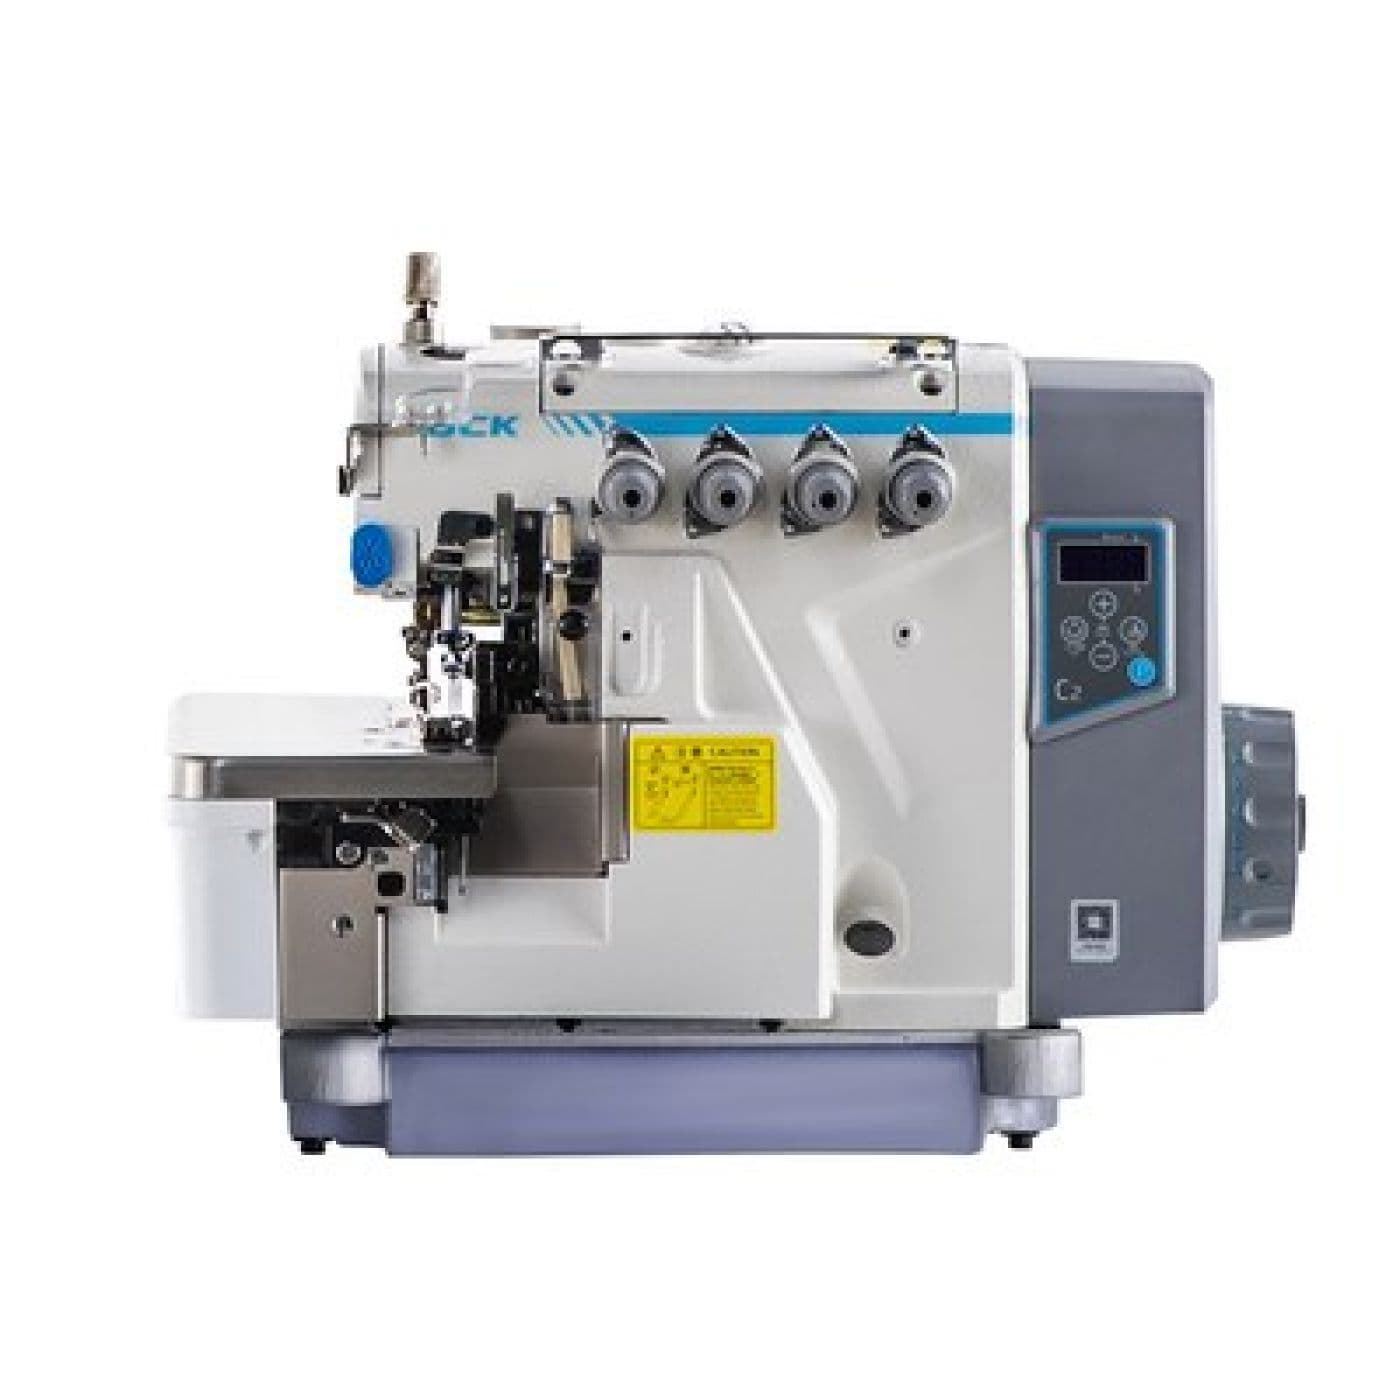 JACK C2-4-M03 (4 HILOS) - Máquina de coser industrial remalladora - Imagen 5